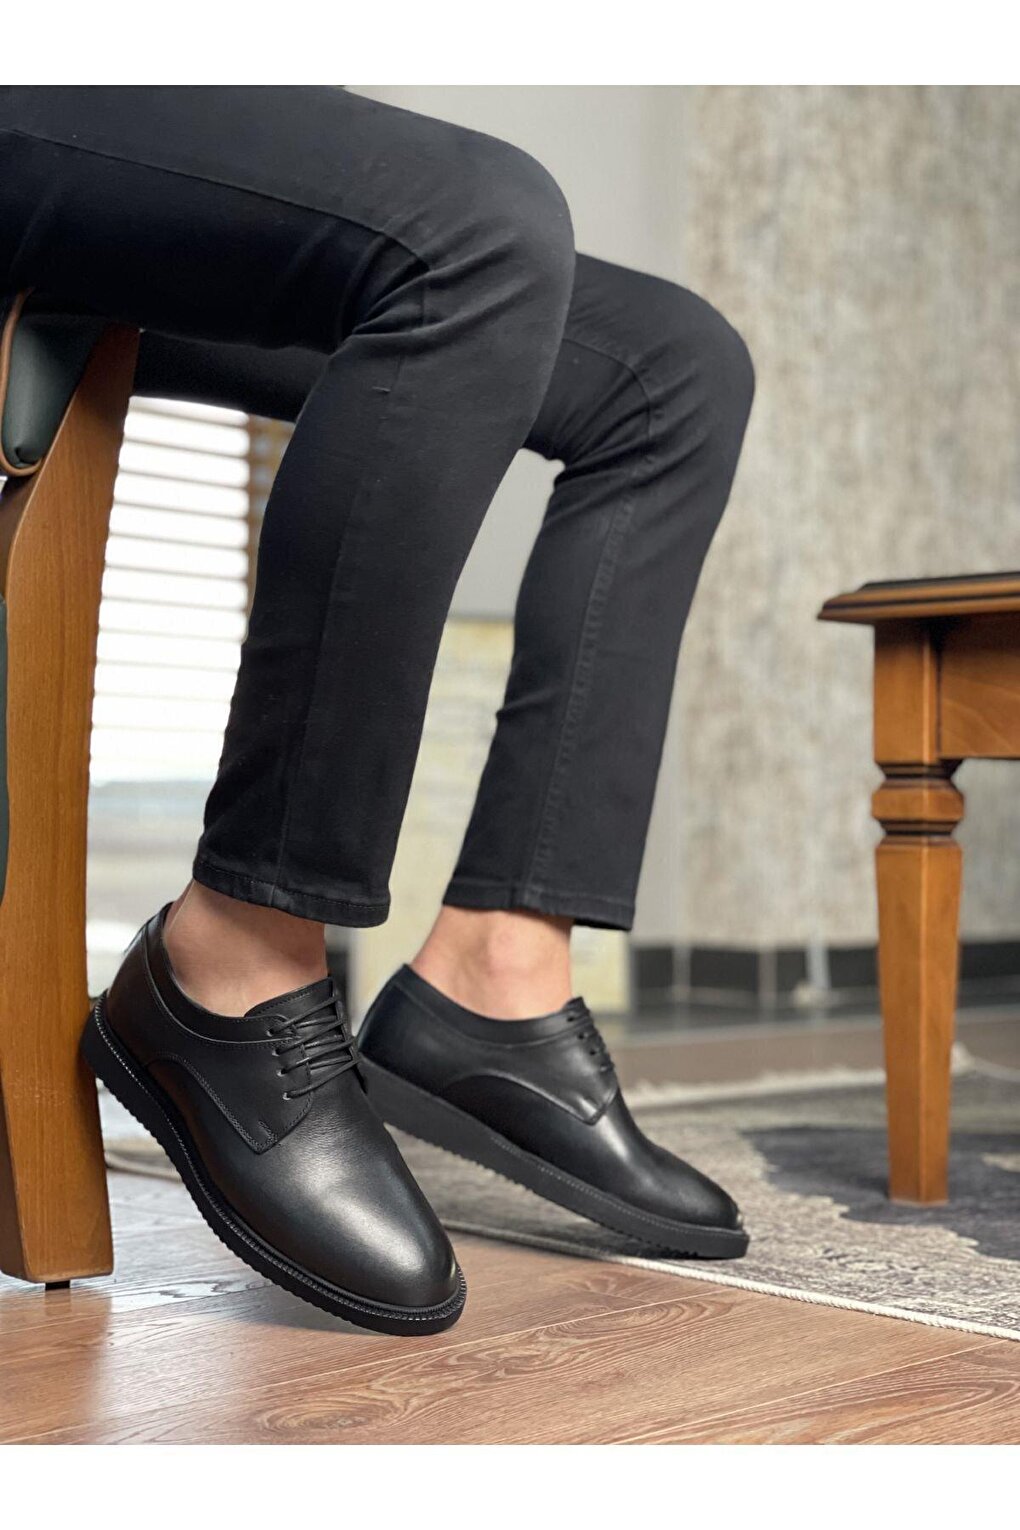 Mercal Мужская повседневная классическая повседневная обувь из натуральной кожи Muggo летняя модная мужская повседневная обувь удобная мягкая мужская обувь из натуральной кожи уличная мужская модельная обувь без шнуровки ч